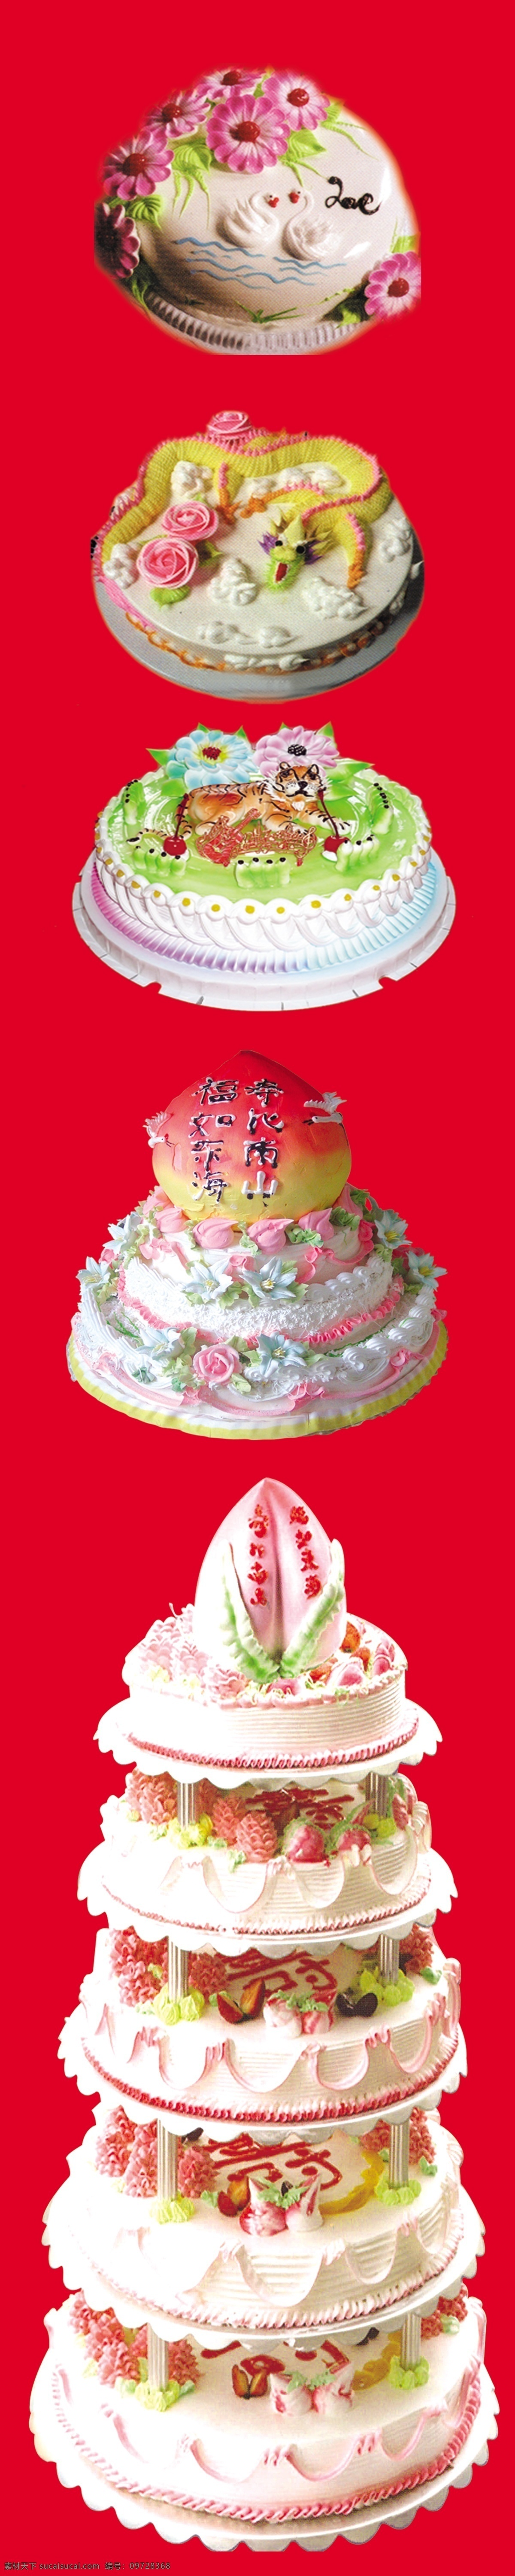 寿糕图片 多层蛋糕 寿糕 红色背景 多层寿糕 蛋糕 画册设计